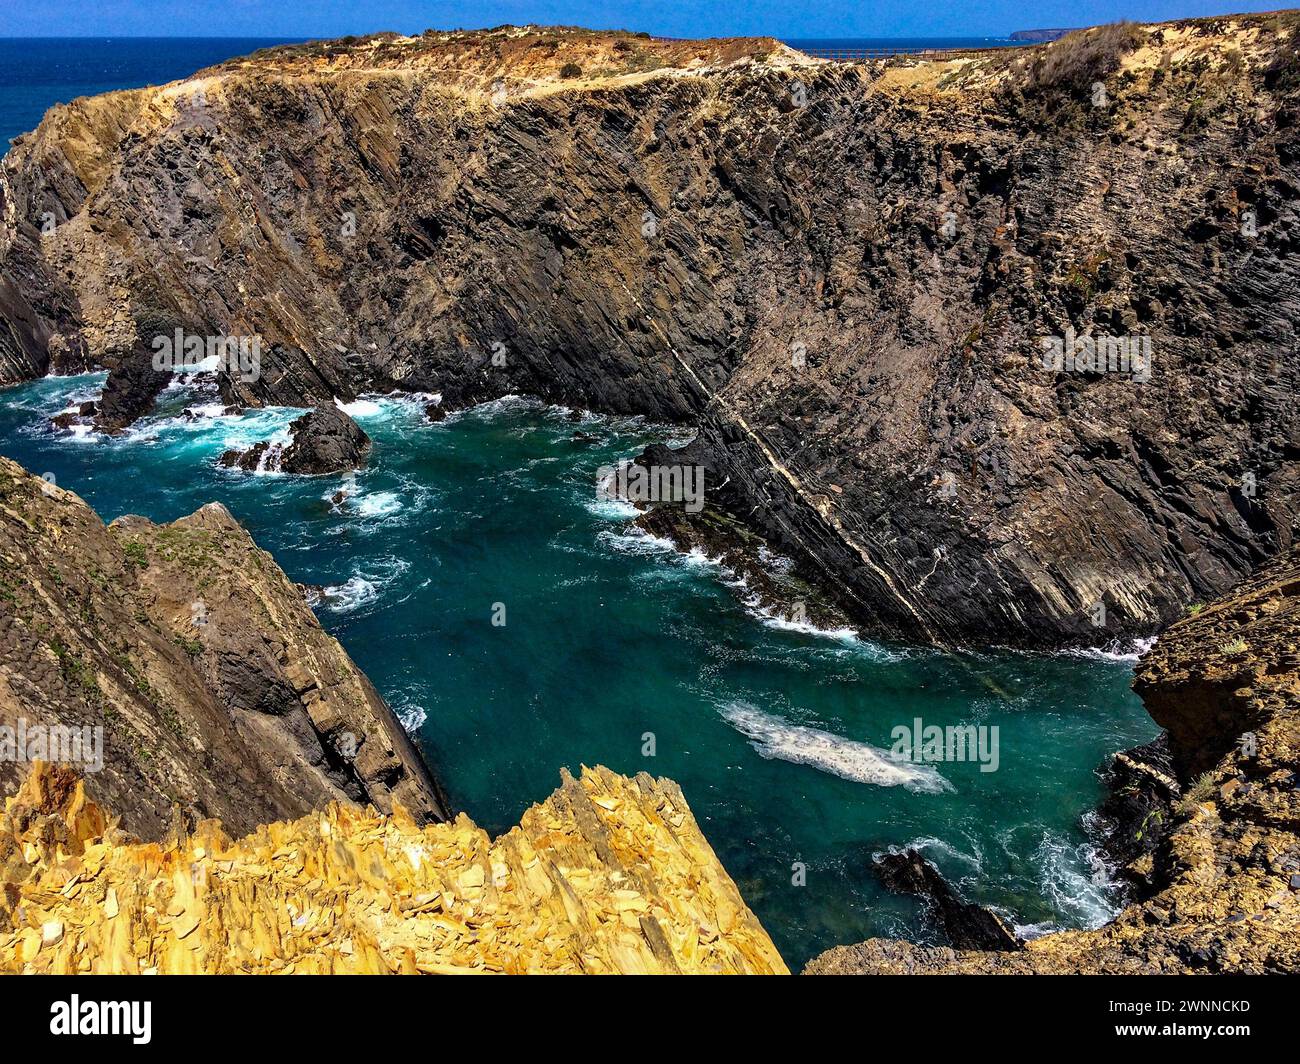 Das Bild zeigt eine zerklüftete Küstenlandschaft mit steilen Klippen, die eine kleine Bucht mit türkisfarbenem Meer umgeben. Das Meer ist turbulent mit weißen Wellen, die sich in Crashin tummeln Stockfoto